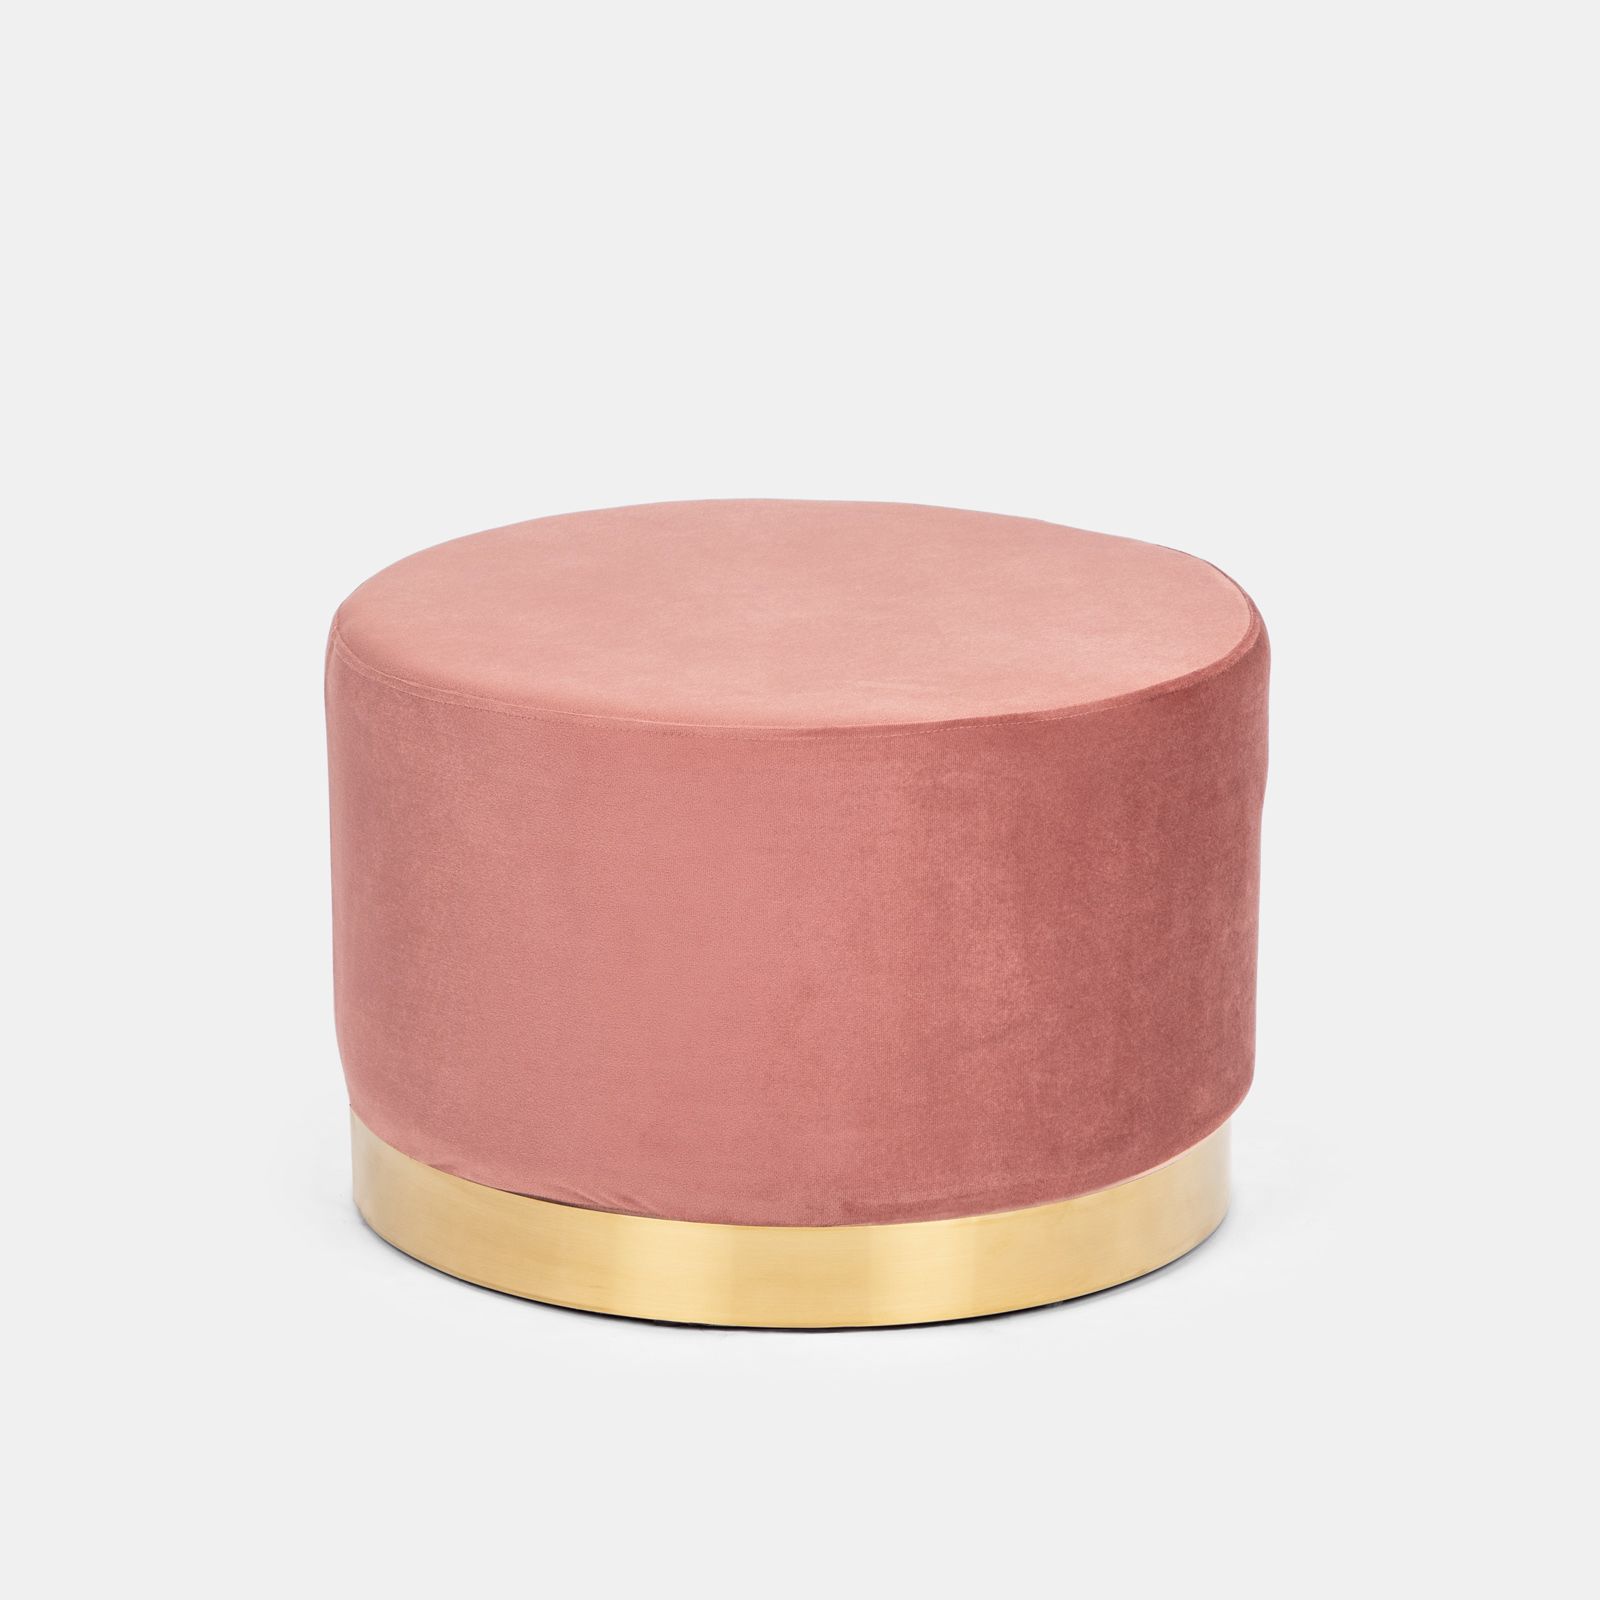 Pouf rotondo 54 cm in velluto rosa antico con anello dorato - Isolda